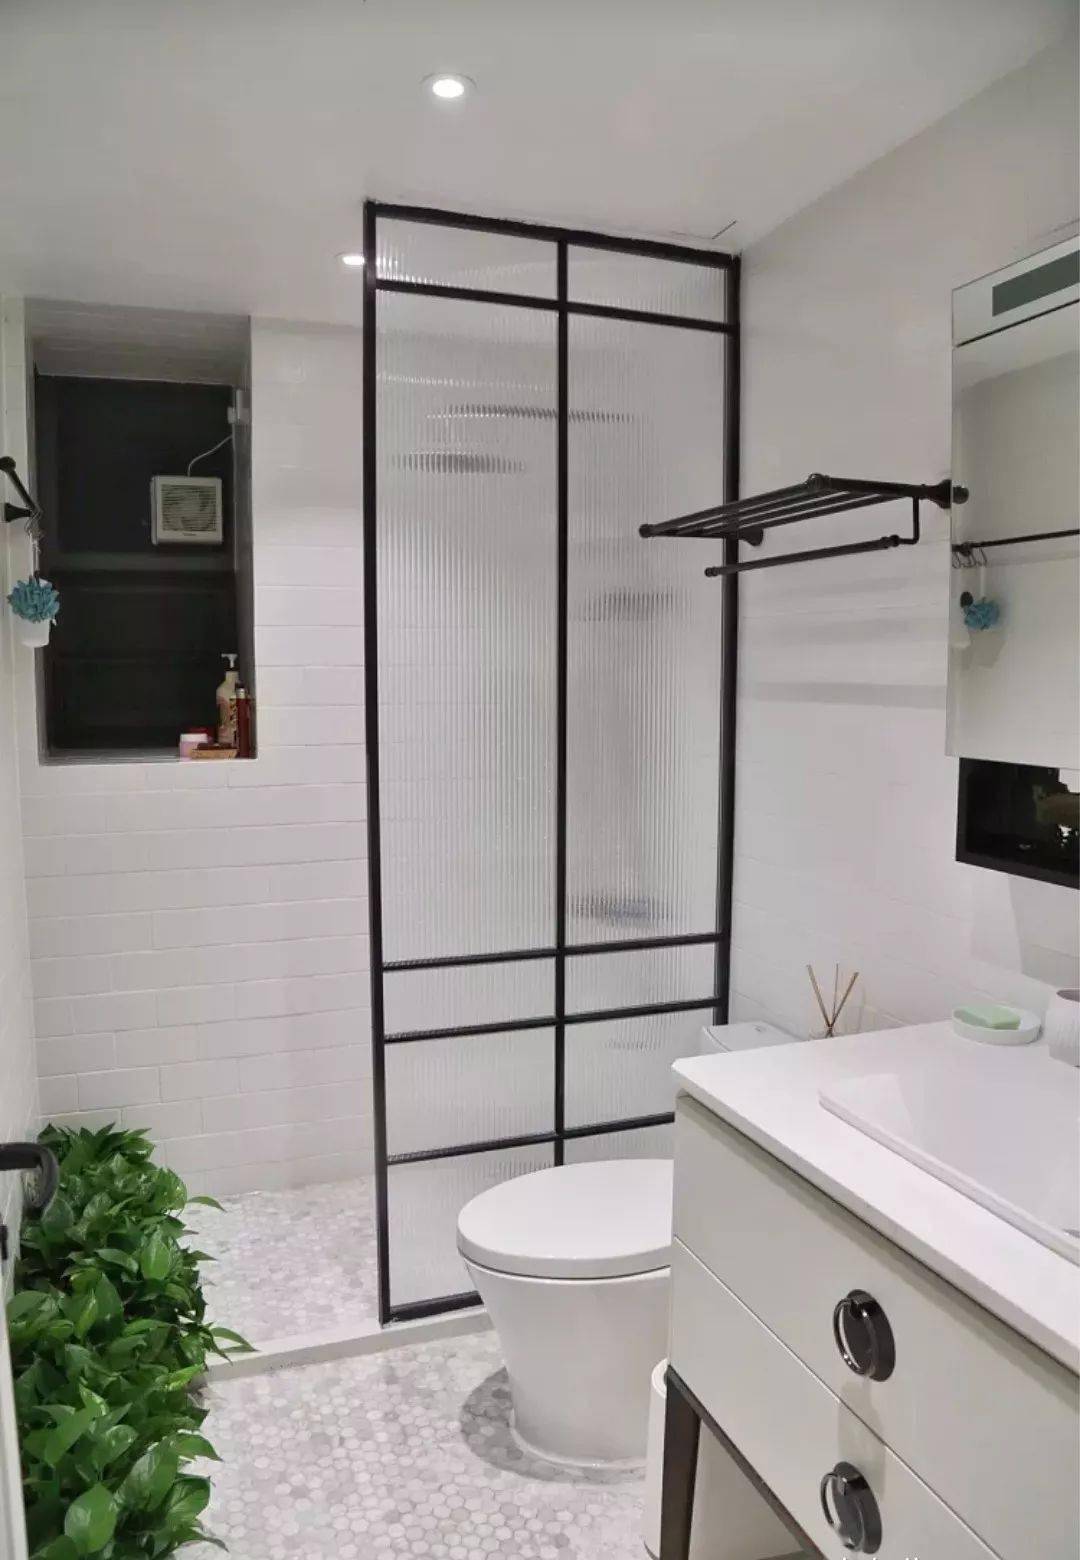 小户型卫生间适合用什么做隔断?玻璃和浴帘都可以